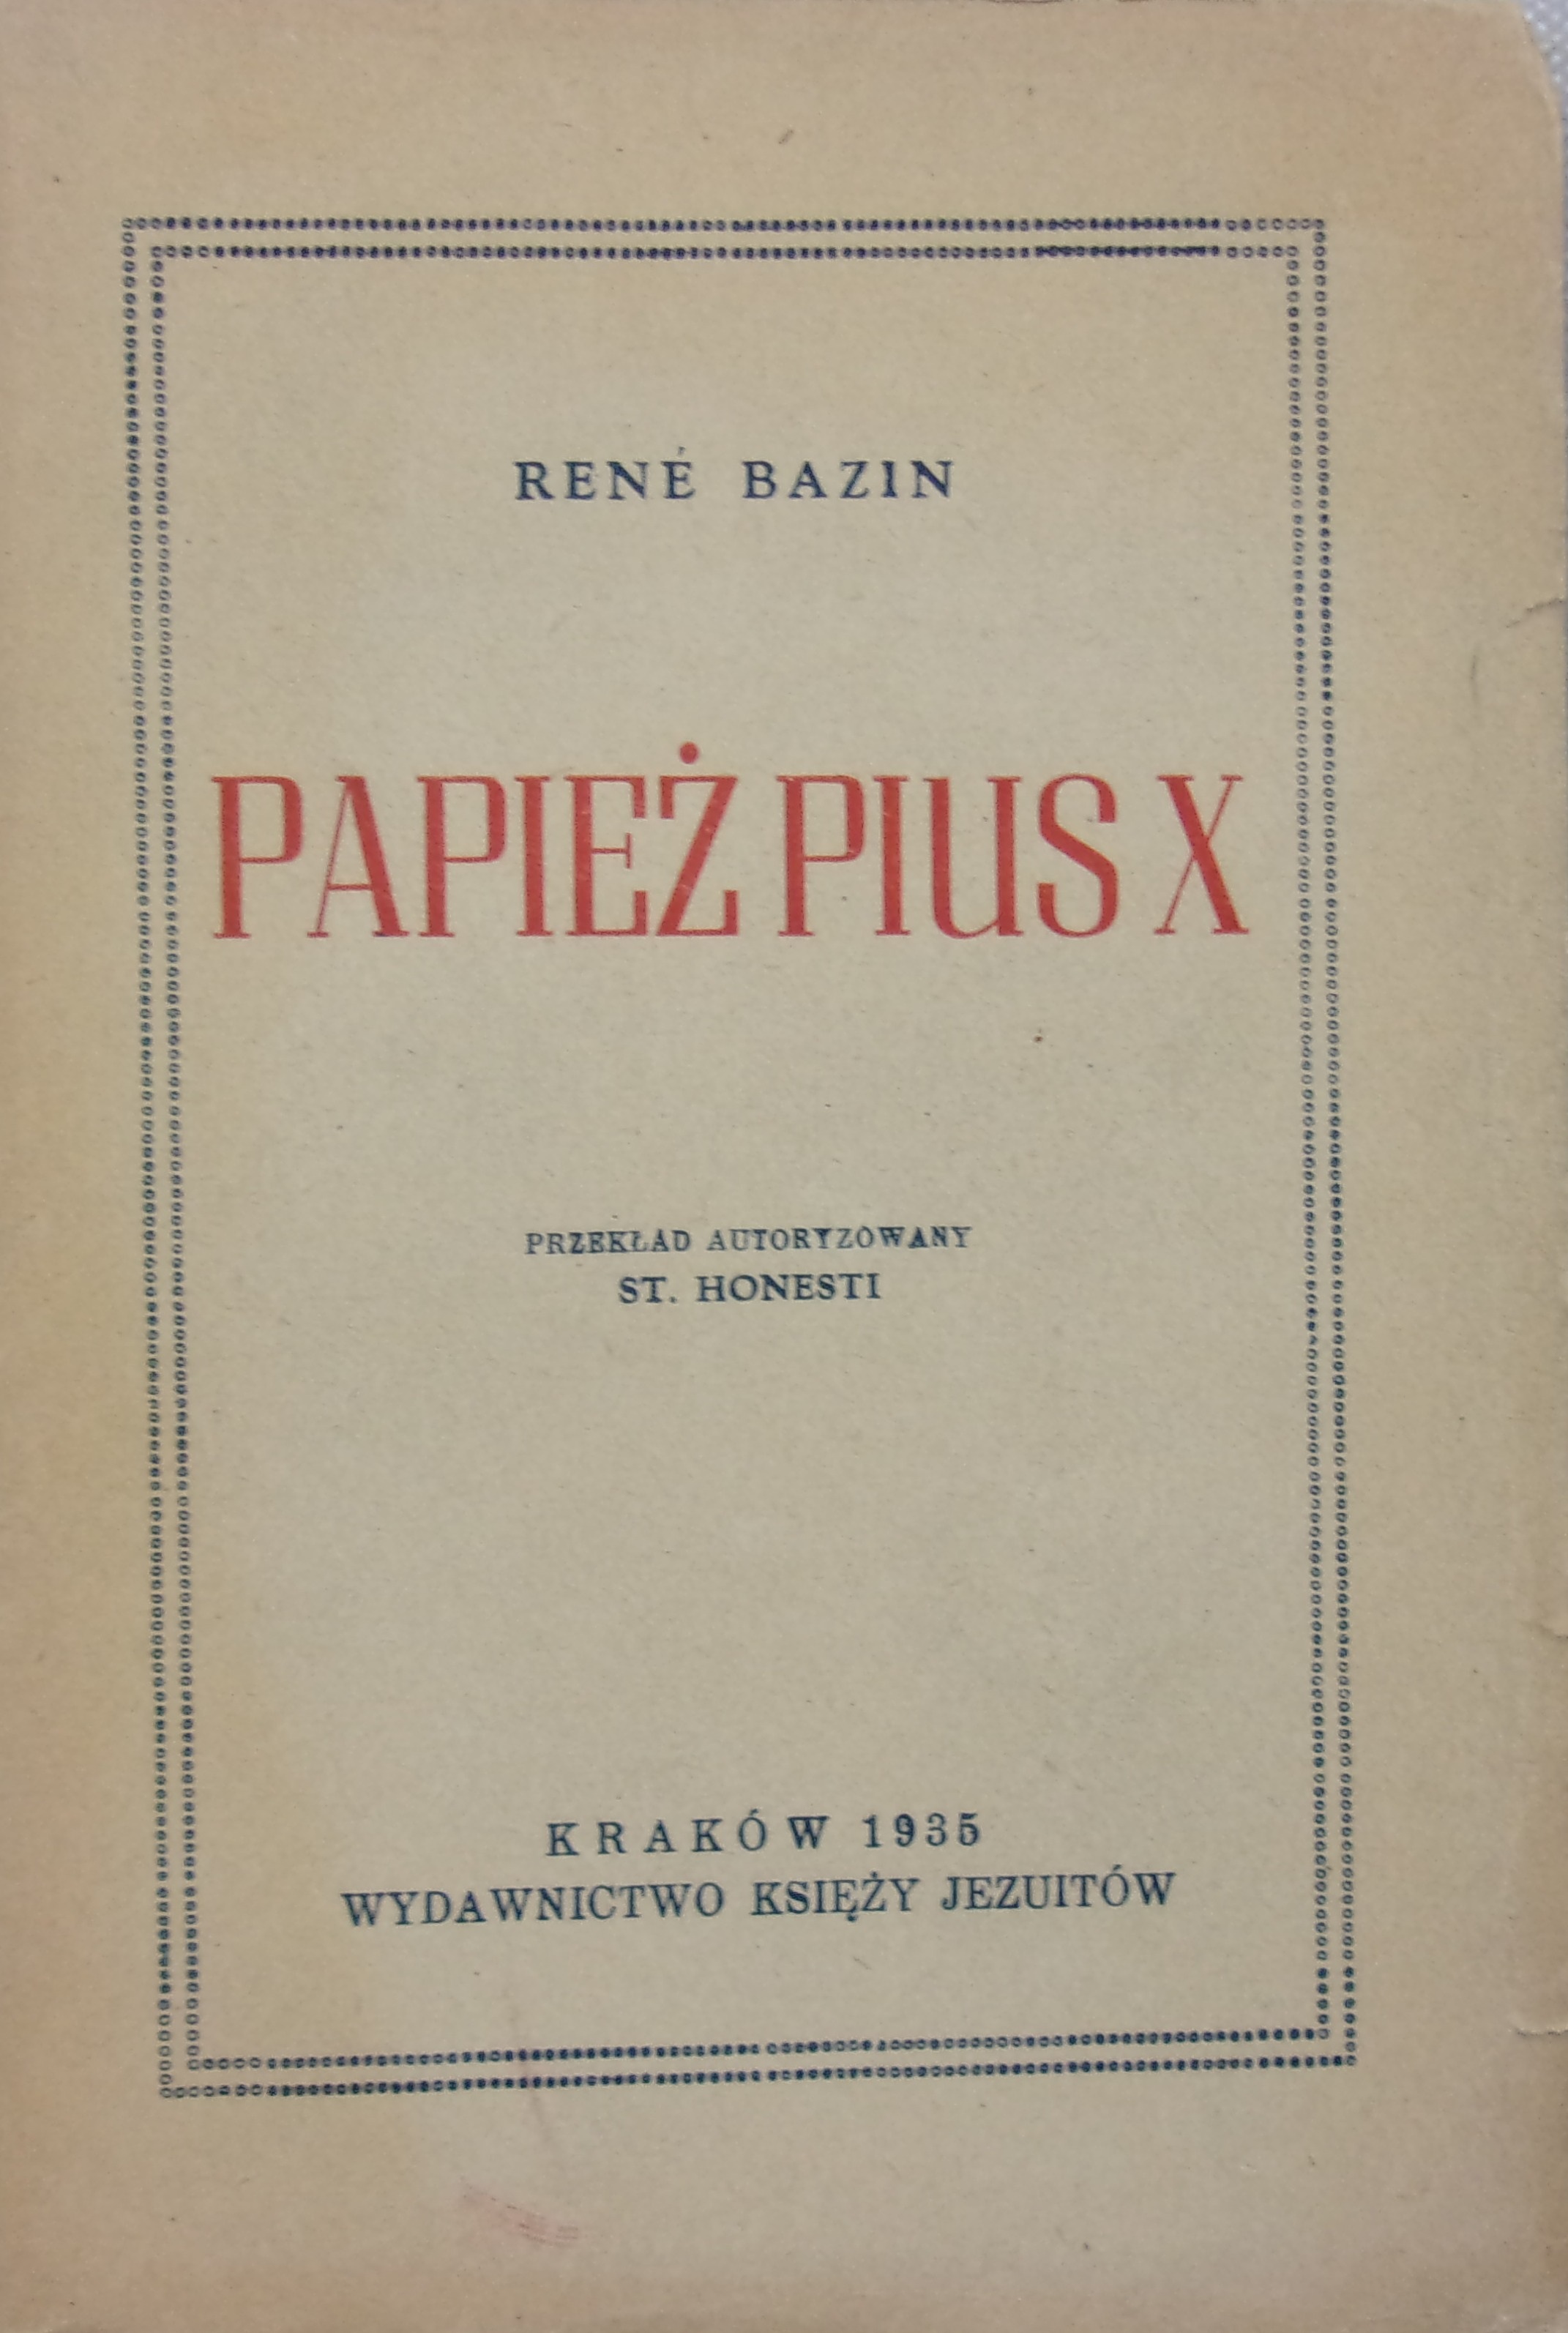 René Bazin, Papie Pius X. Przekad autoryzowany St. Honesti. Kraków 1935. WYDAWNICTWO KSIʯY JEZUITÓW.